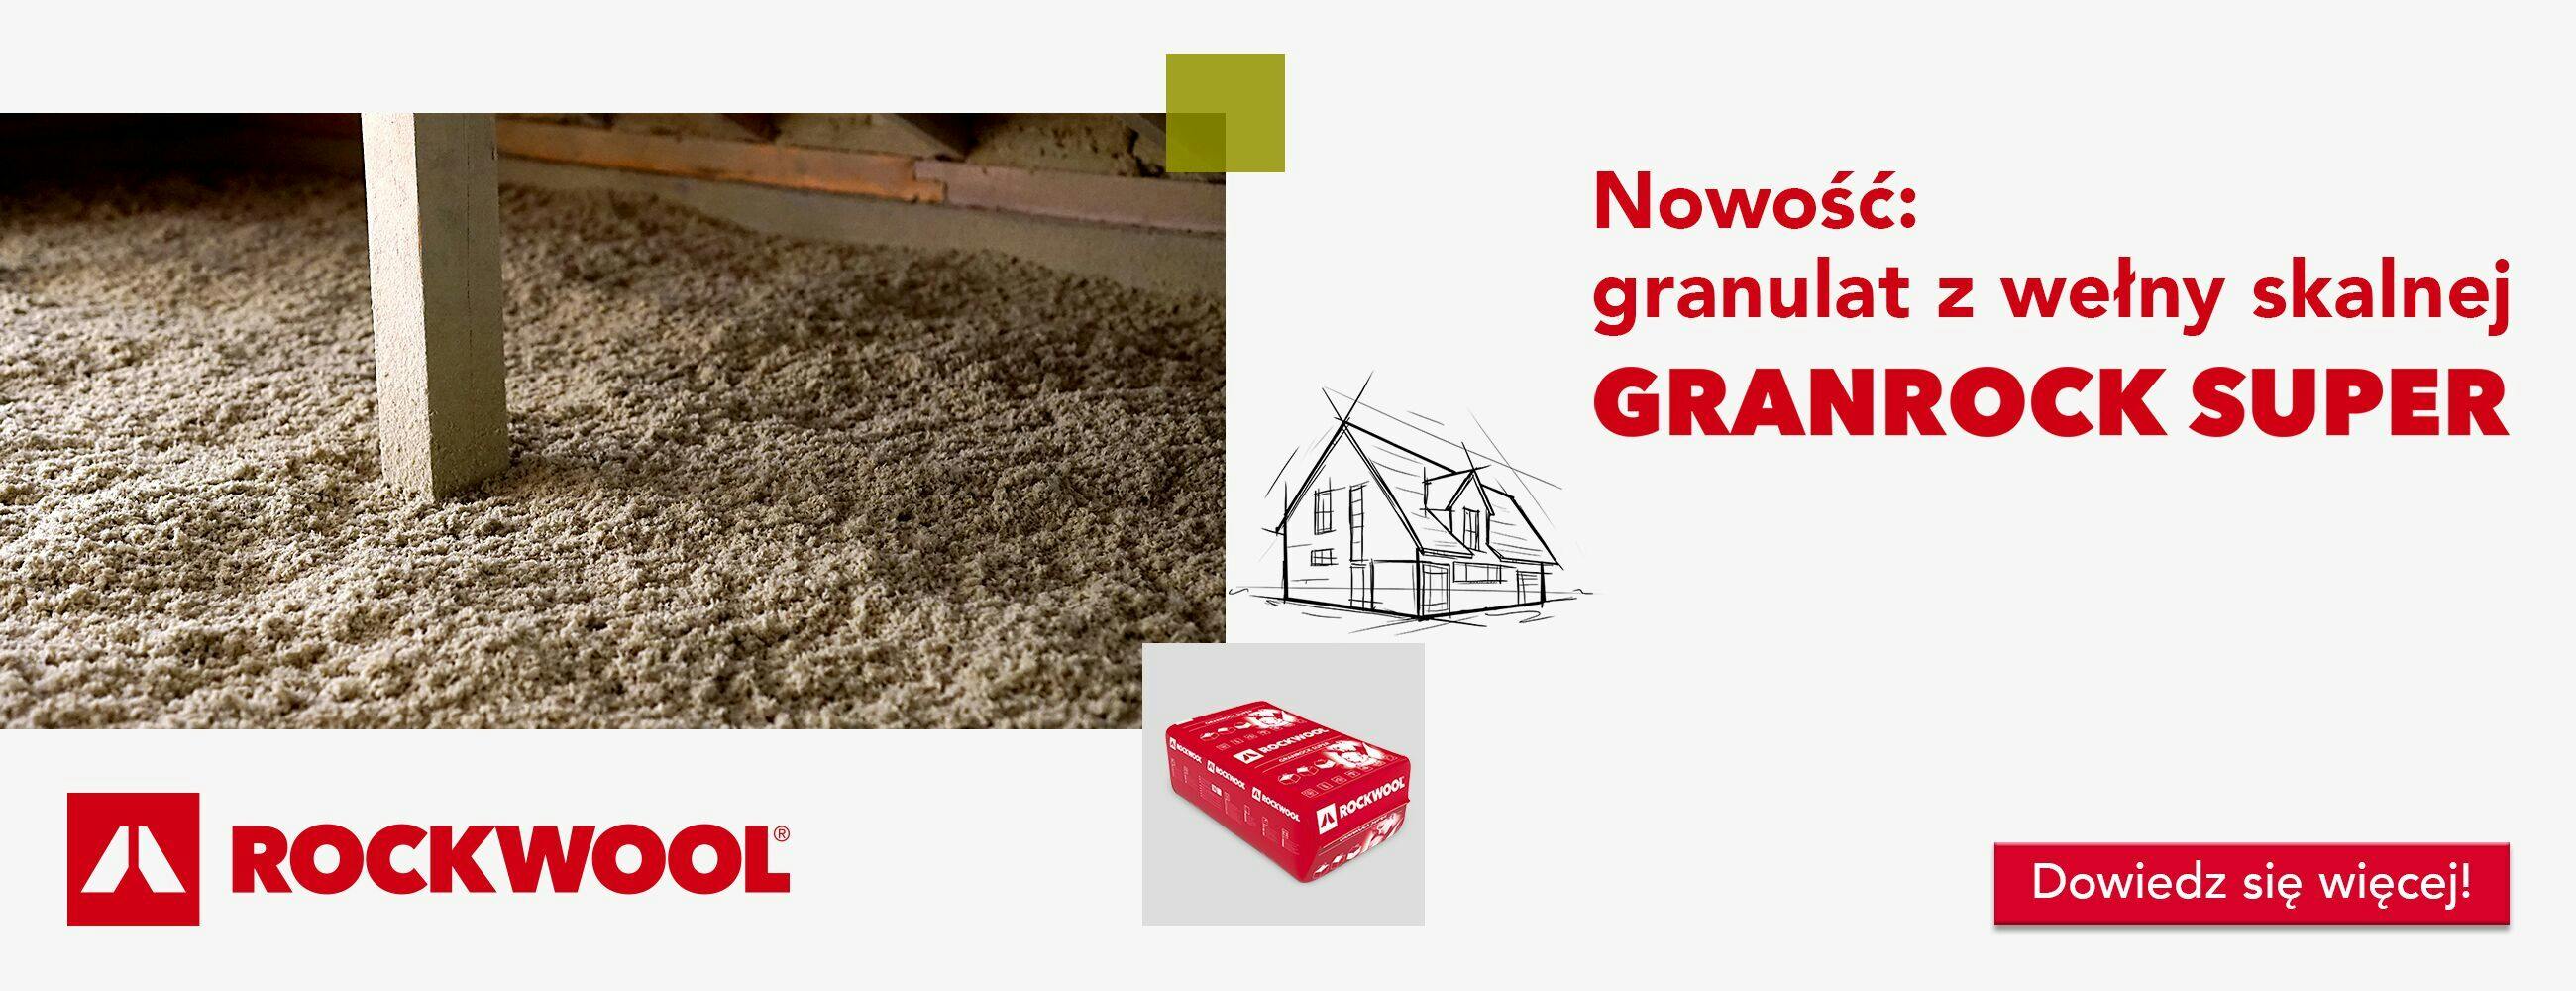 Granrock super,  baner, www, new product, granulate